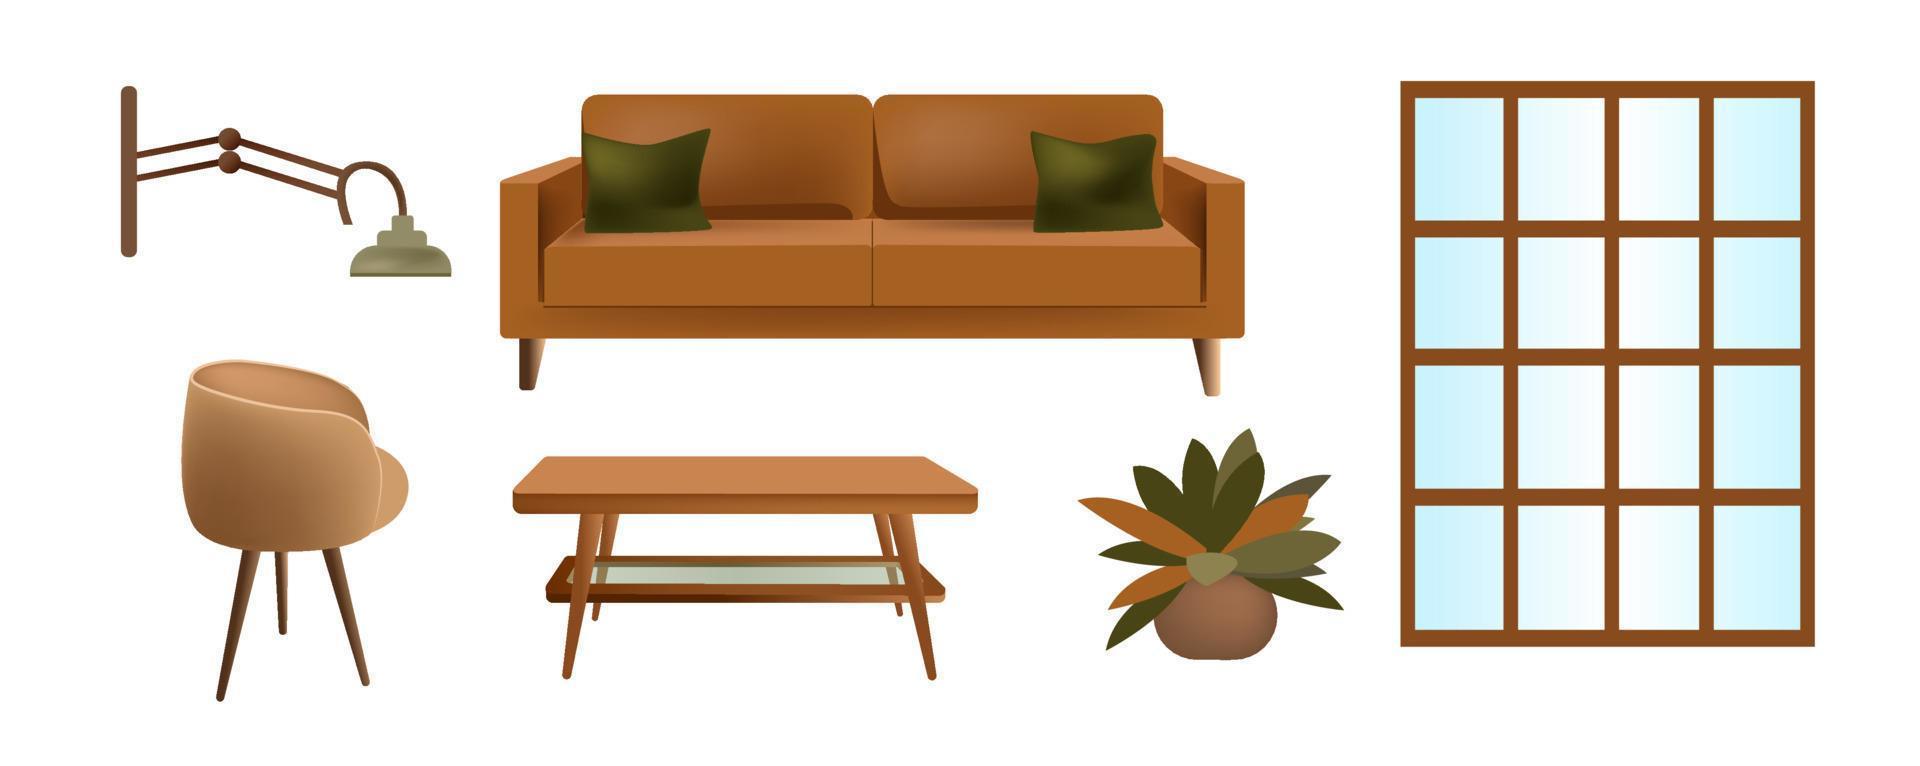 juego de muebles en la sala de estar. sofá, silla, mesa de centro, lámpara y ventana. objetos aislados sobre un fondo blanco. vector